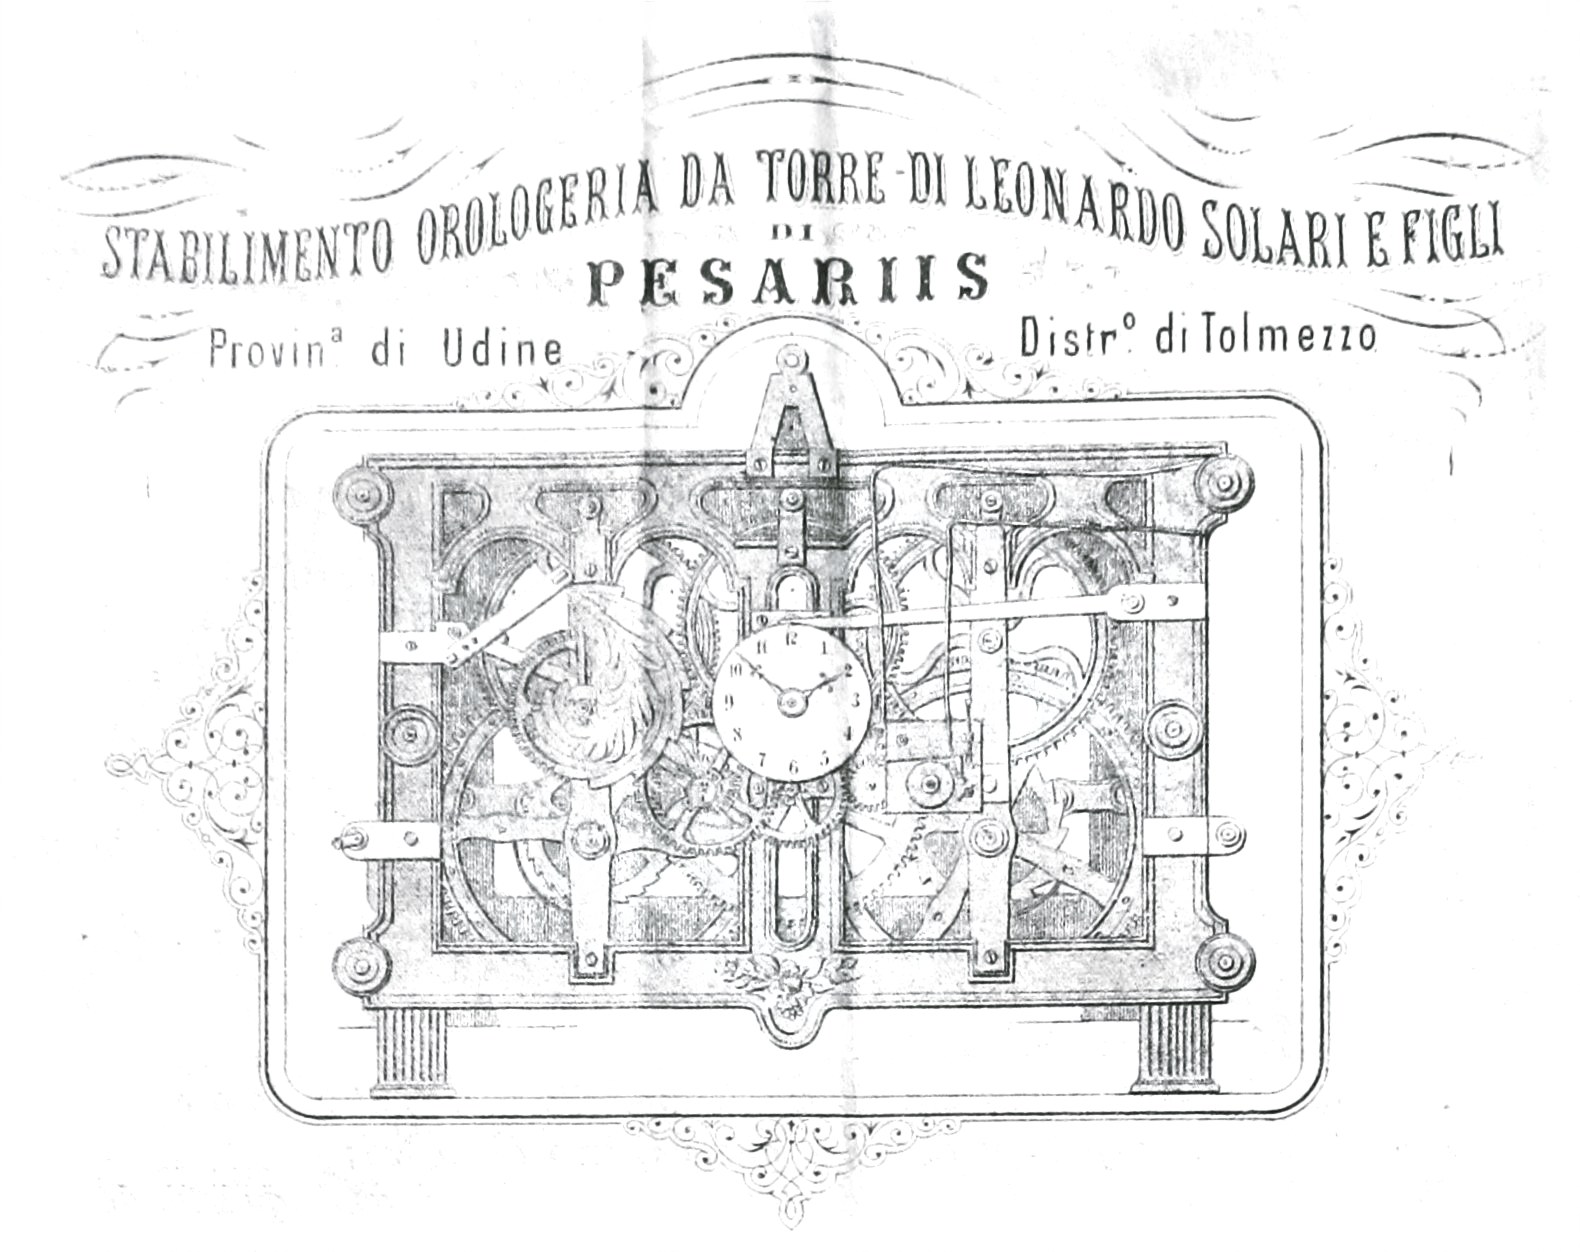 Frontespizio dépliant dello Stabilimento orologeria da torre di Leonardo Solari e Figli di Pesariis (1880)